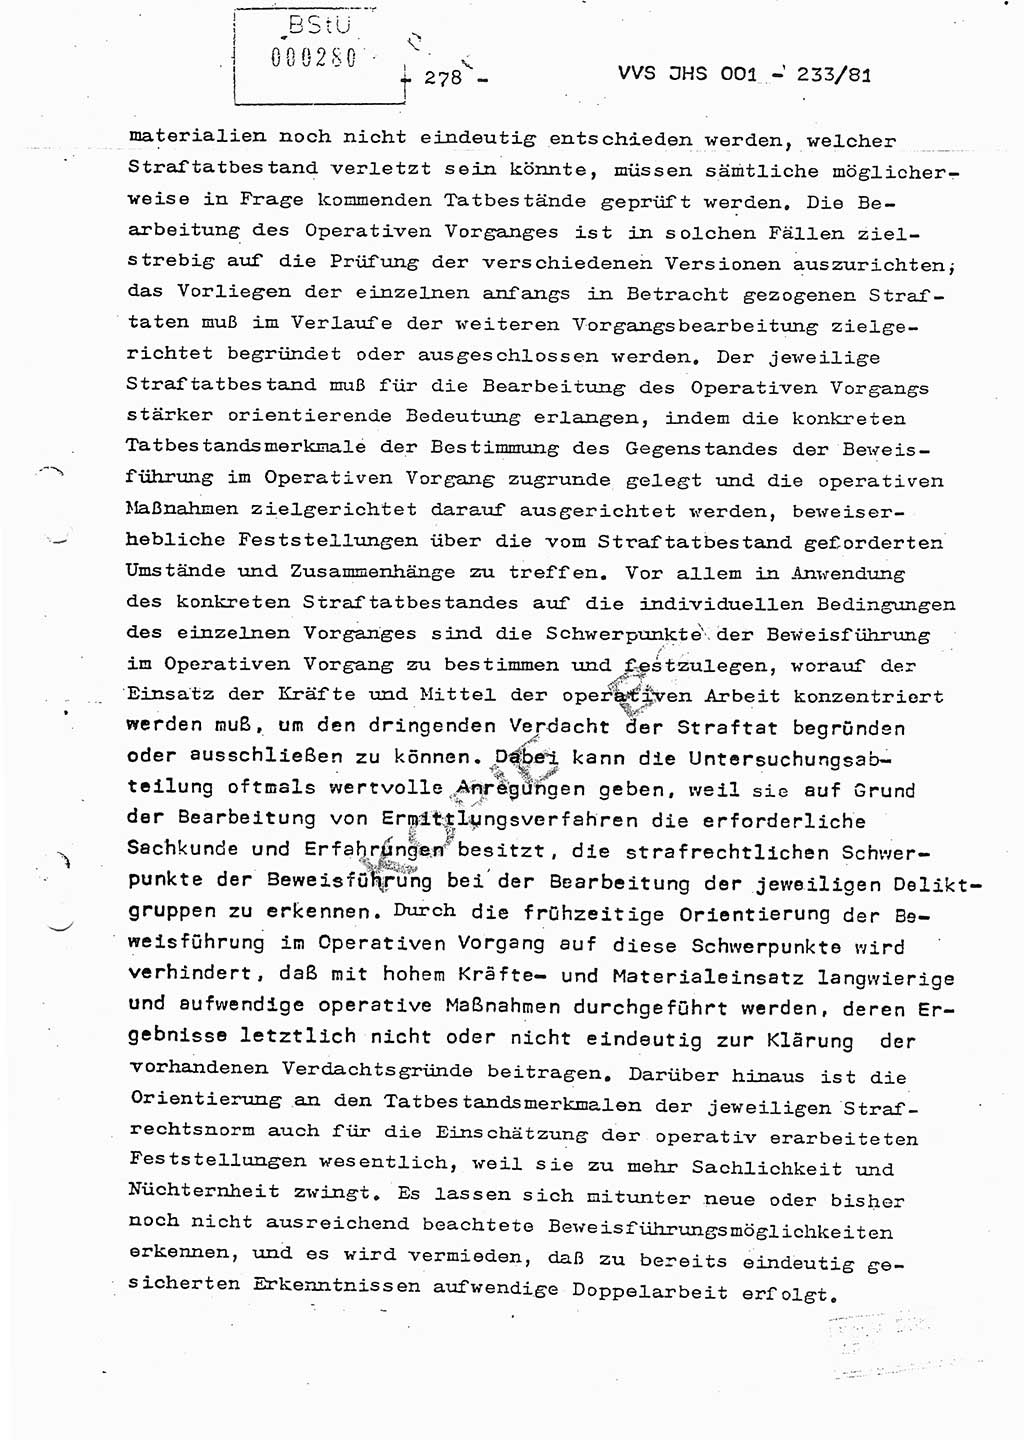 Dissertation Oberstleutnant Horst Zank (JHS), Oberstleutnant Dr. Karl-Heinz Knoblauch (JHS), Oberstleutnant Gustav-Adolf Kowalewski (HA Ⅸ), Oberstleutnant Wolfgang Plötner (HA Ⅸ), Ministerium für Staatssicherheit (MfS) [Deutsche Demokratische Republik (DDR)], Juristische Hochschule (JHS), Vertrauliche Verschlußsache (VVS) o001-233/81, Potsdam 1981, Blatt 278 (Diss. MfS DDR JHS VVS o001-233/81 1981, Bl. 278)